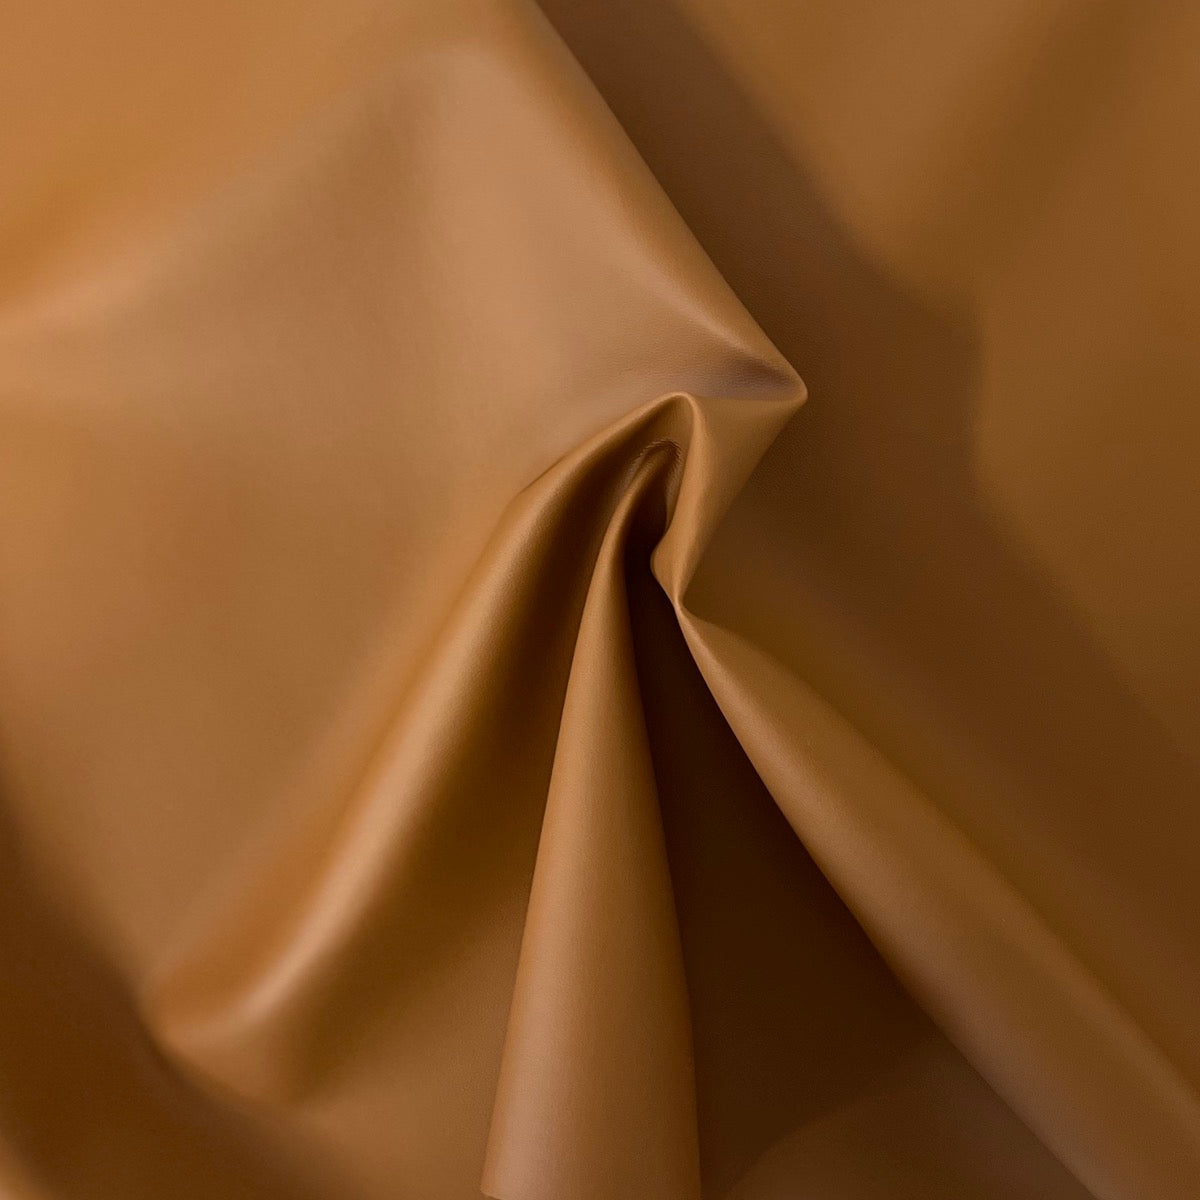 Camel Brown Soft Skin Faux Leather Vinyl Fabric - Fashion Fabrics LLC